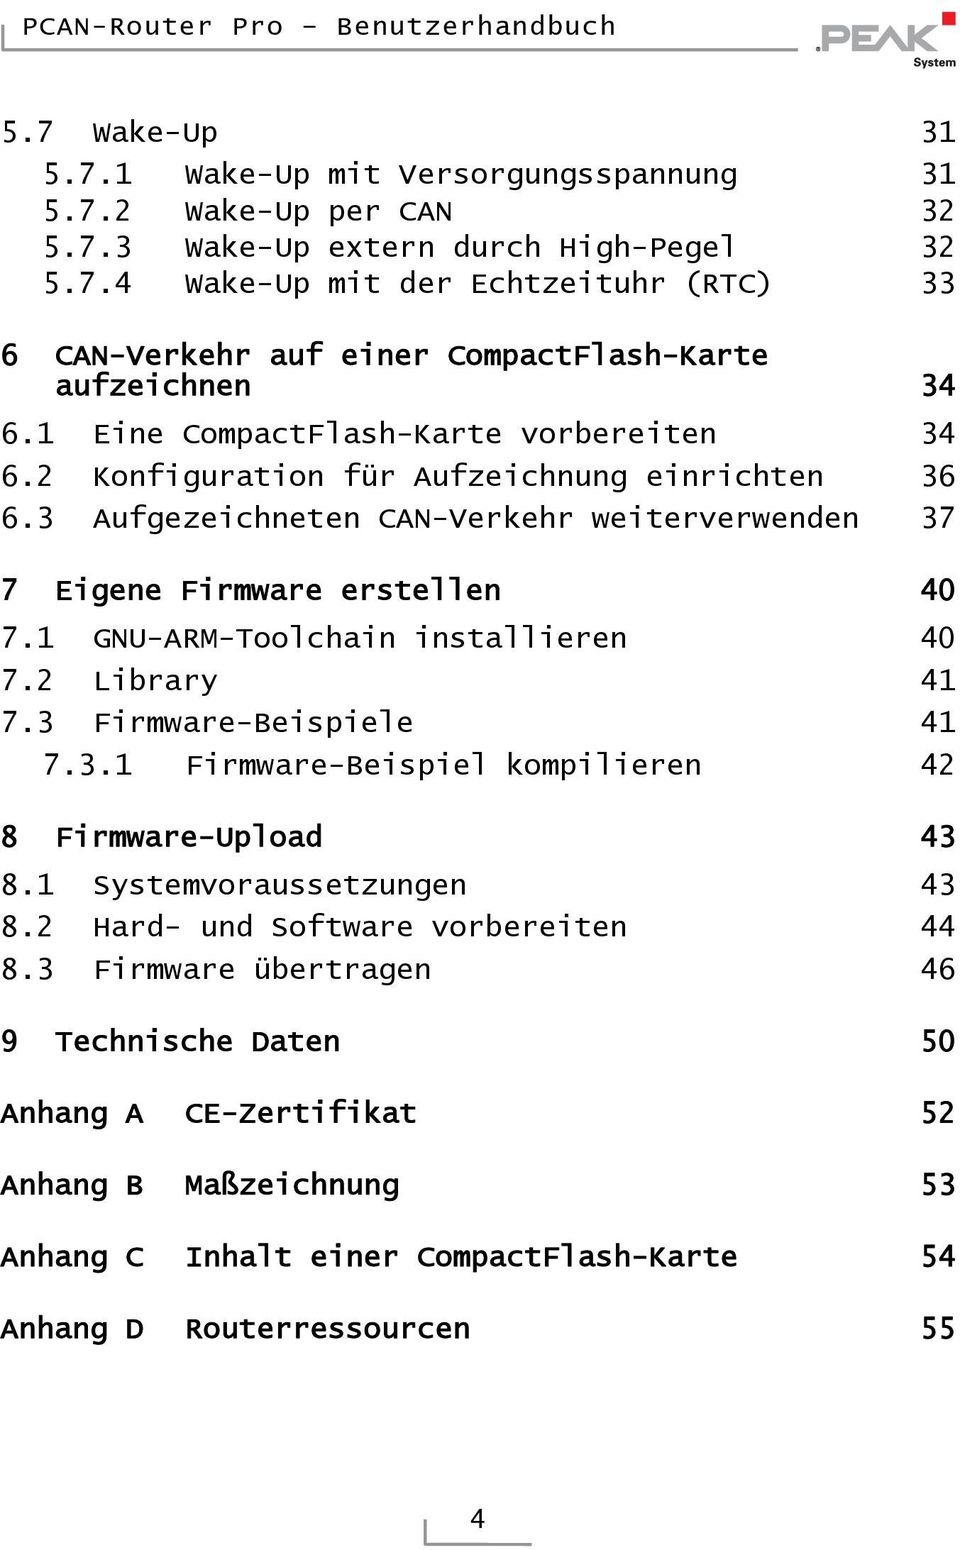 1 GNU-ARM-Toolchain installieren 40 7.2 Library 41 7.3 Firmware-Beispiele 41 7.3.1 Firmware-Beispiel kompilieren 42 8 Firmware-Upload 43 8.1 Systemvoraussetzungen 43 8.